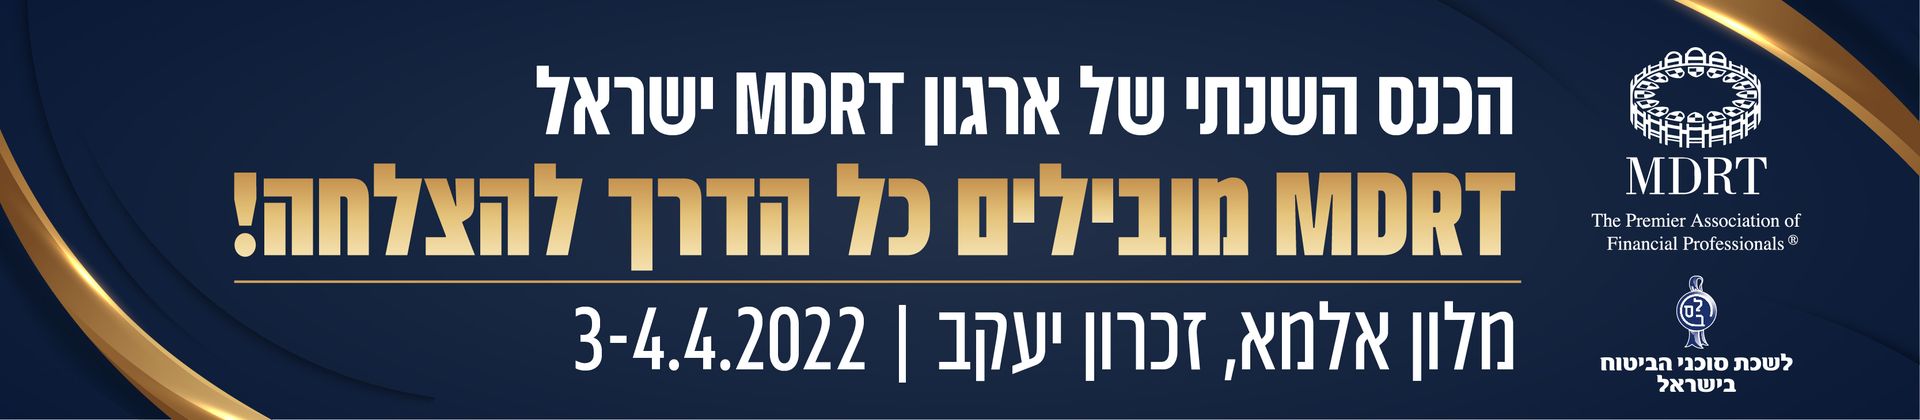 כנס MDRT  ישראל 2022